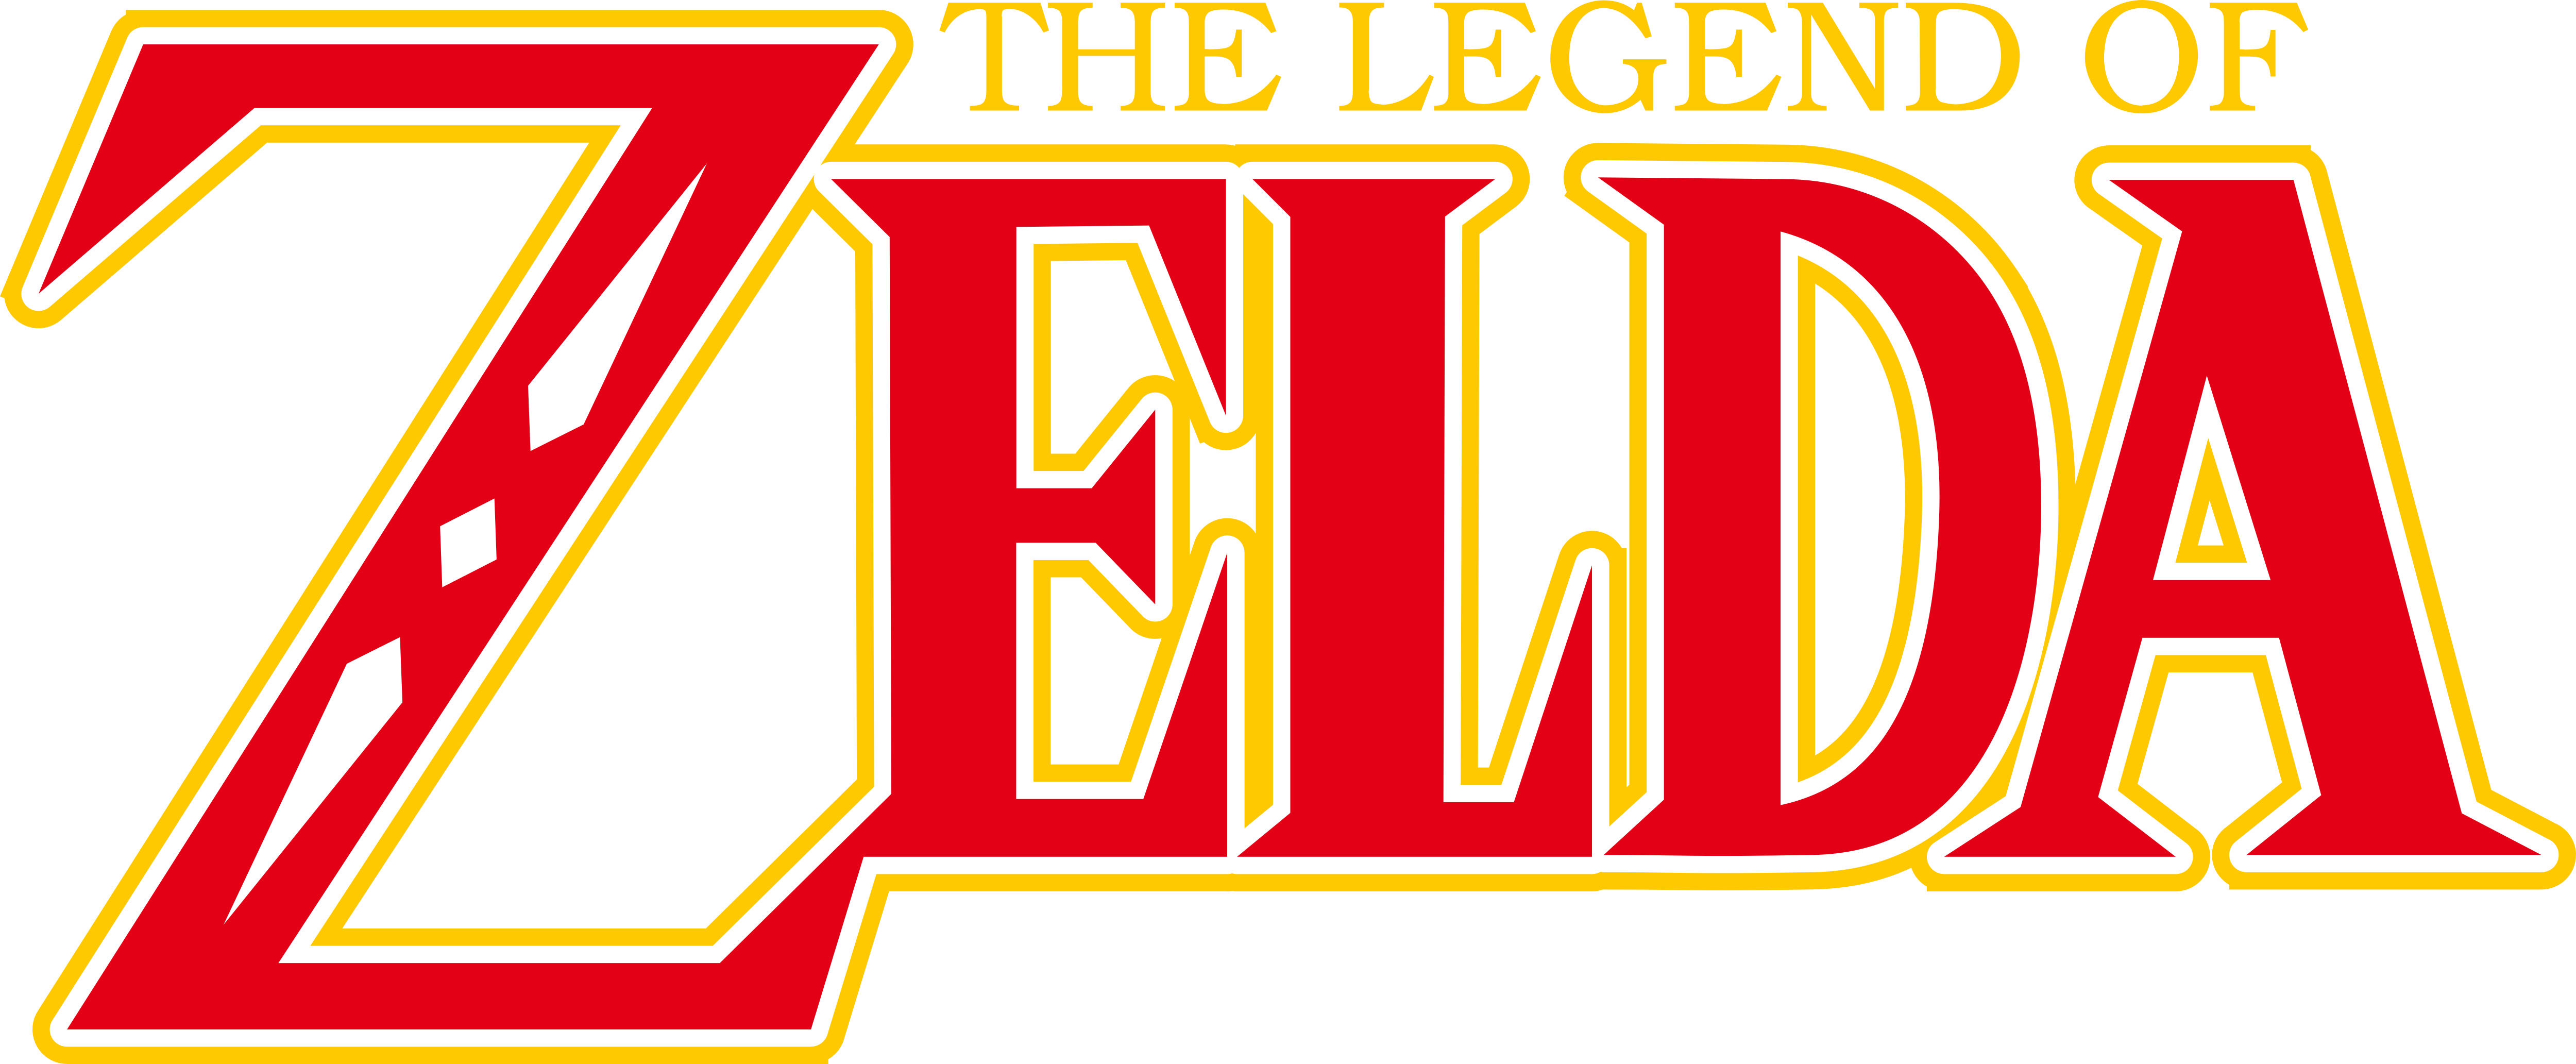 nes legend of zelda font